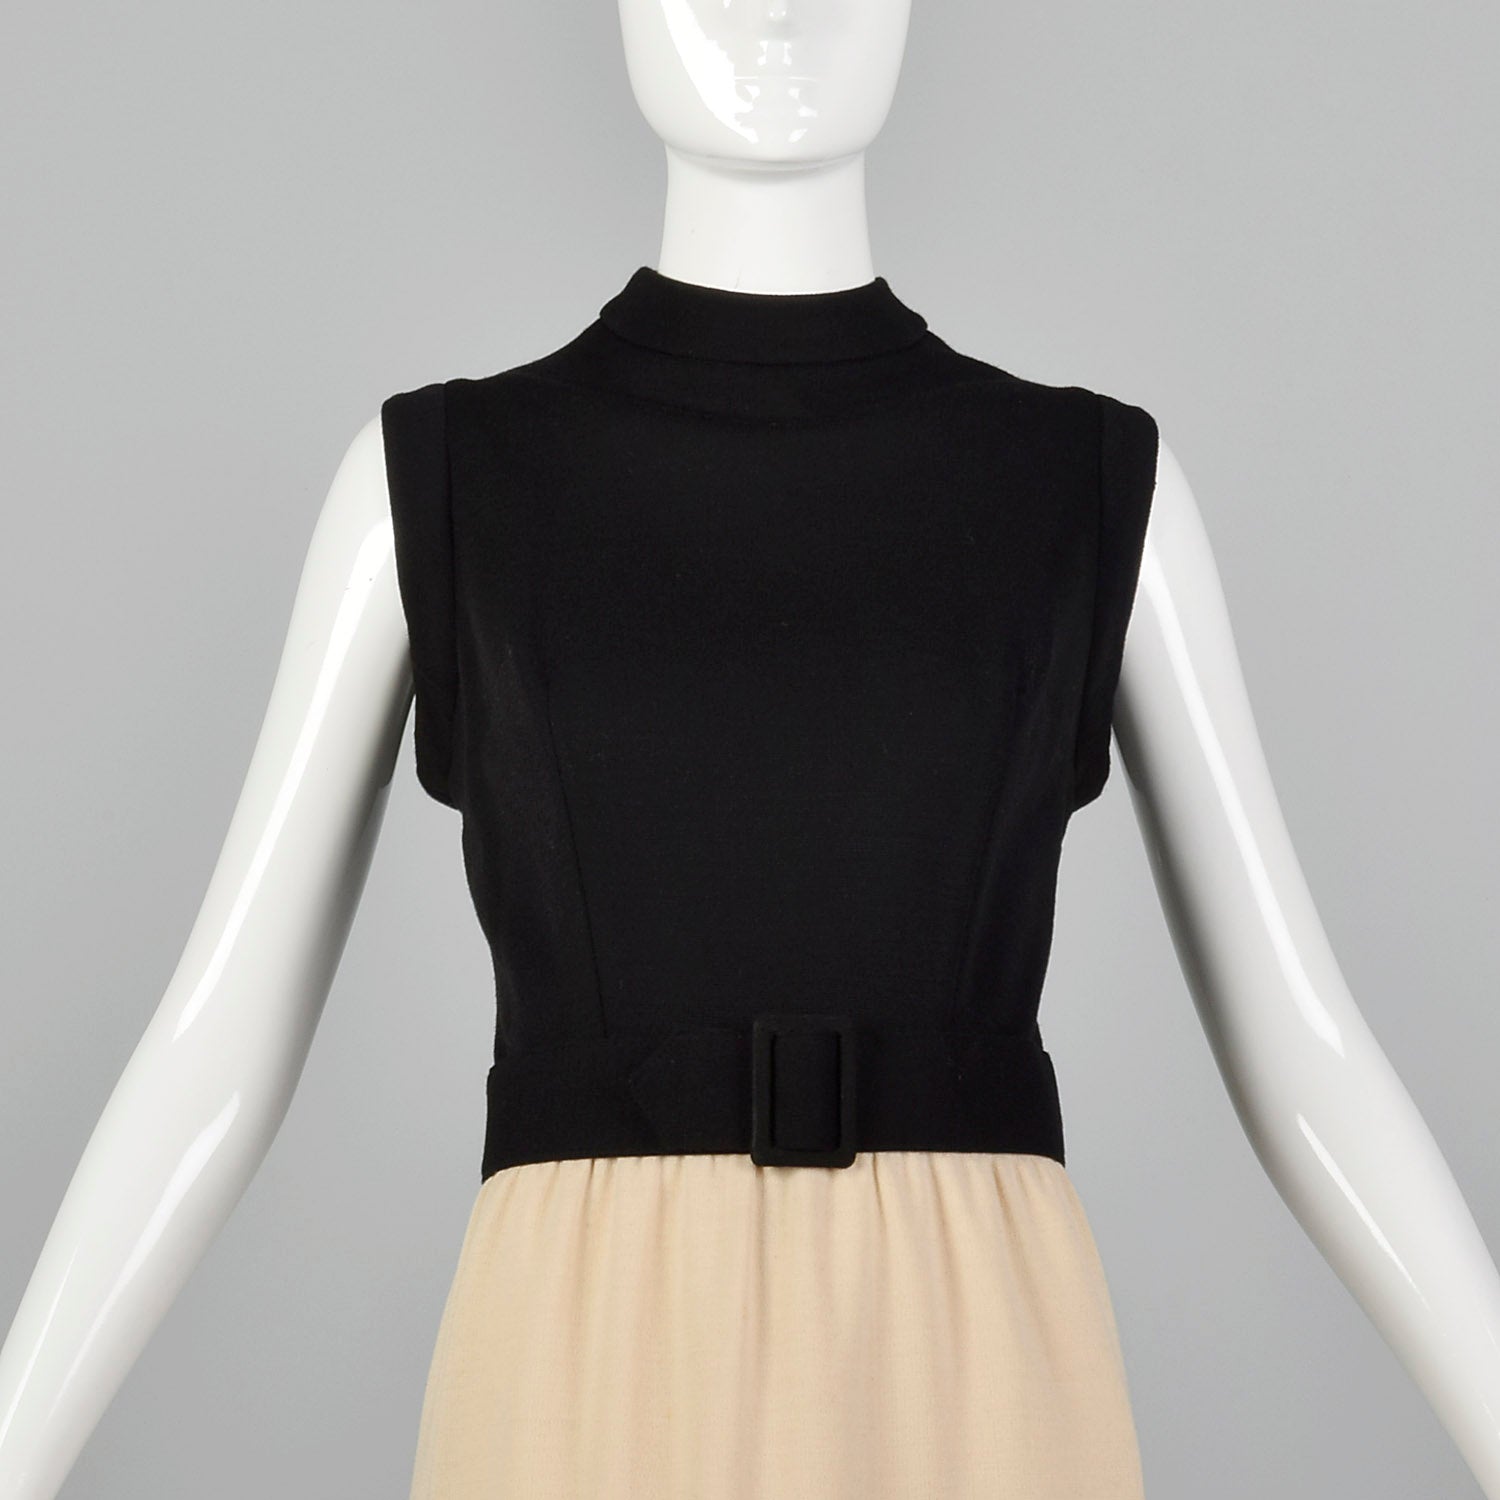 Medium 1970s Knit Dress with Appliqué Details